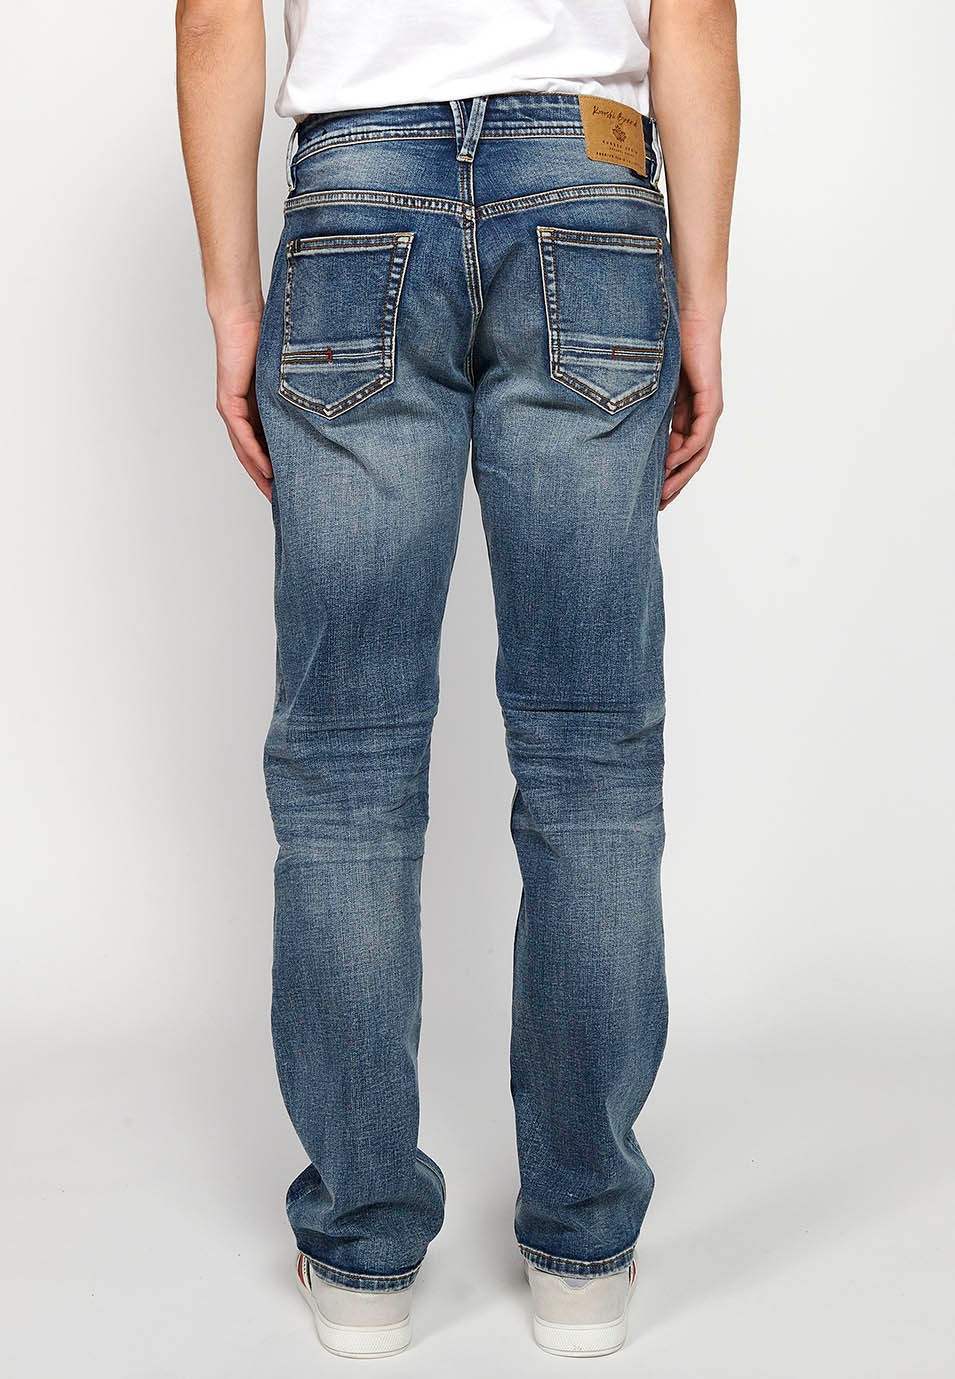 Pantalons llargs jeans xinès comfort fit amb Tancament davanter amb cremallera i botó de Color Blau per a Home